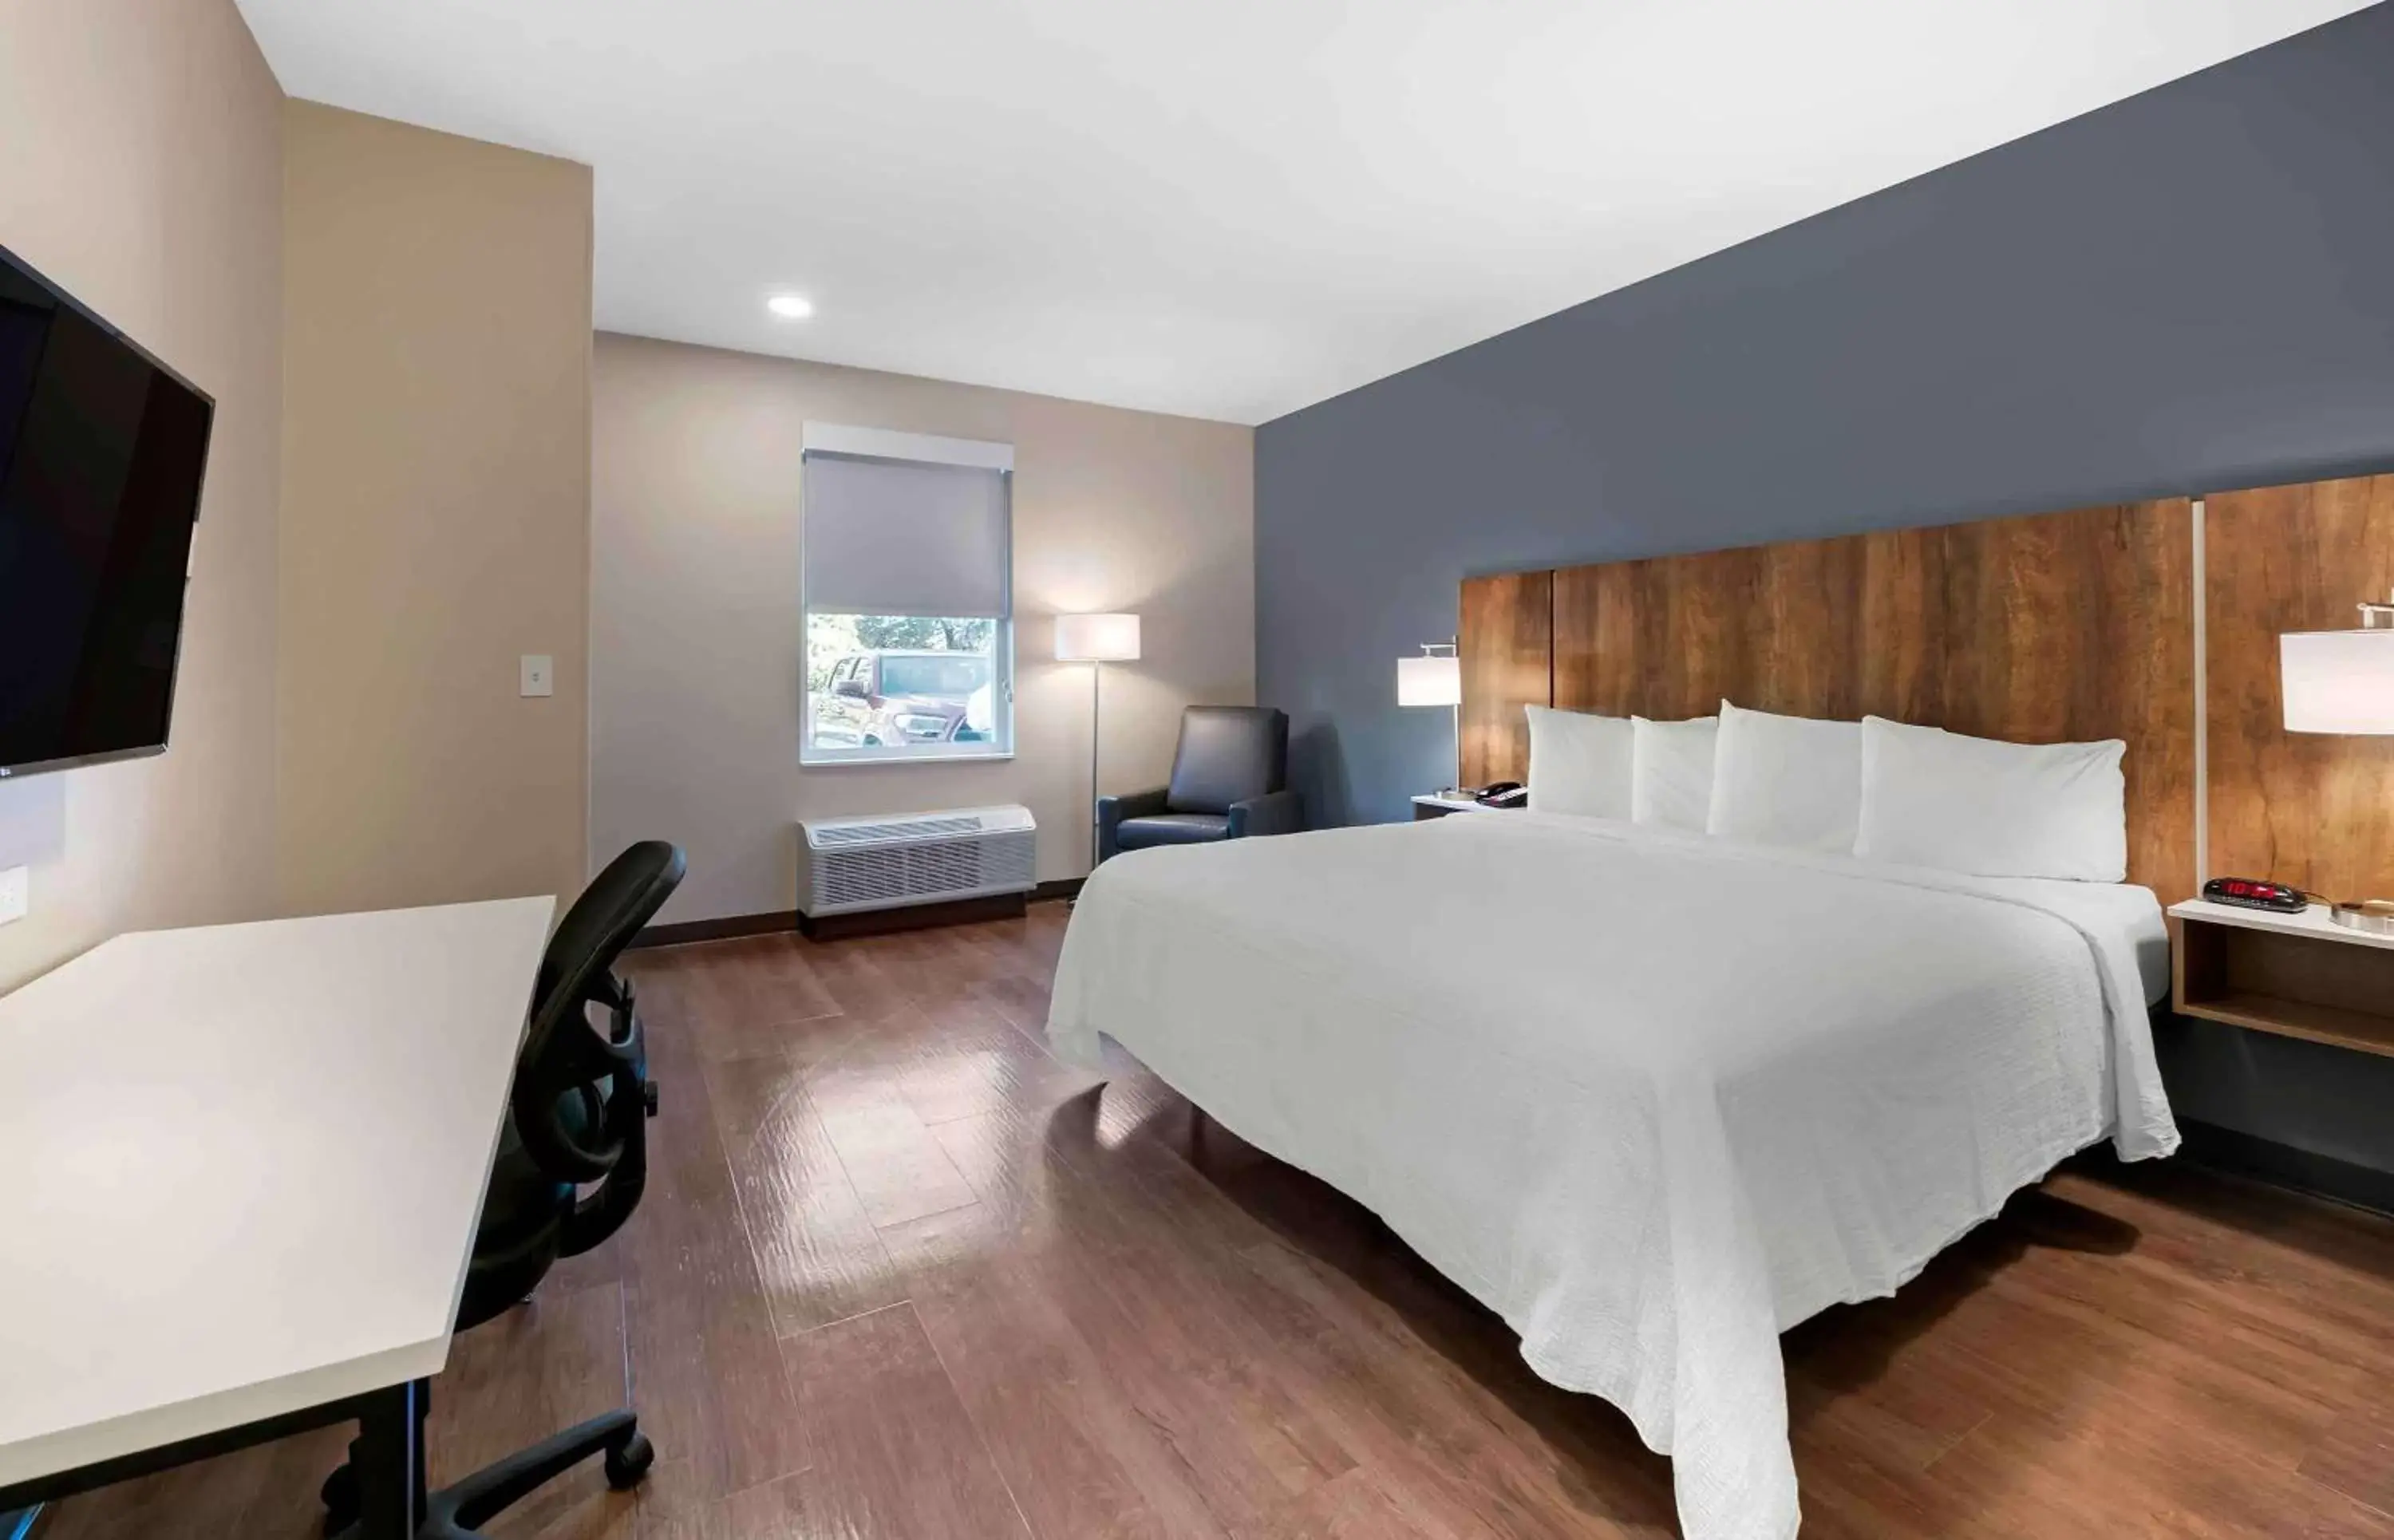 Bedroom in Extended Stay America Premier Suites - Fort Lauderdale - Deerfield Beach